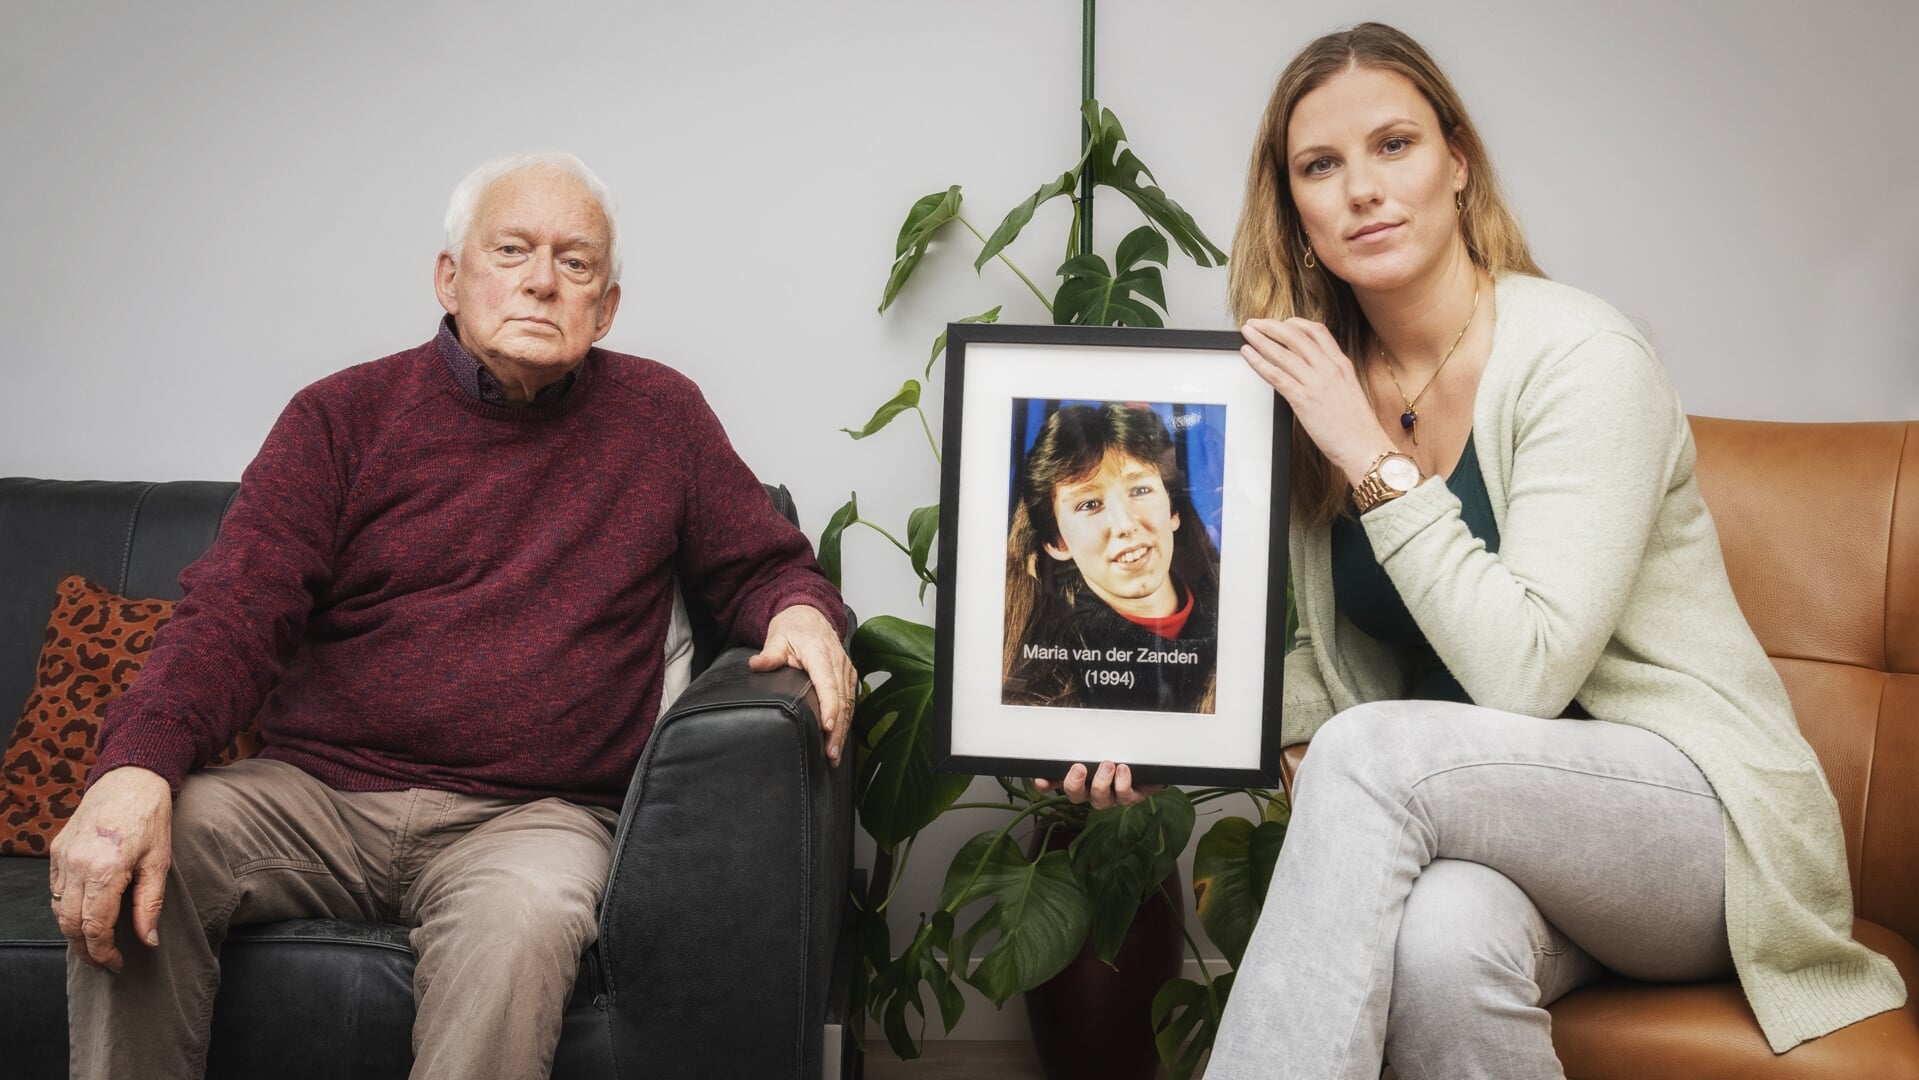 Vader Ab van der Zanden, die nu in Voorthuizen woont, en Kelly de Vries met een foto van de vermiste Maria van der Zanden.